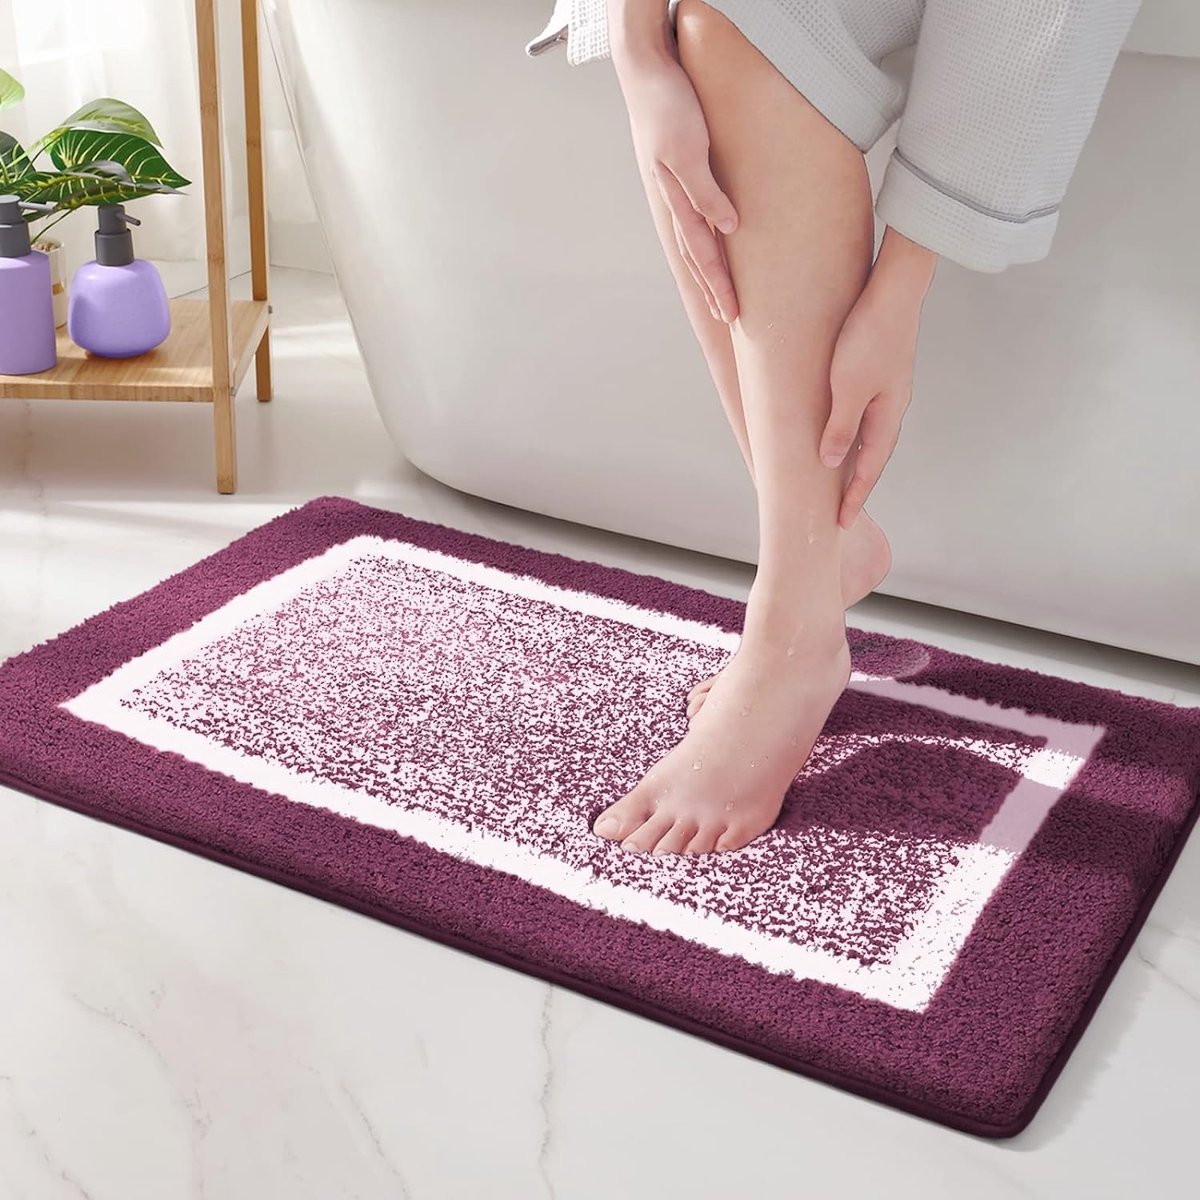 badmat, 40 x 60 cm, badkamertapijt, antislip, zachte badmat, machinewasbaar, microvezel, absorberend tapijt voor badkamer (paars)